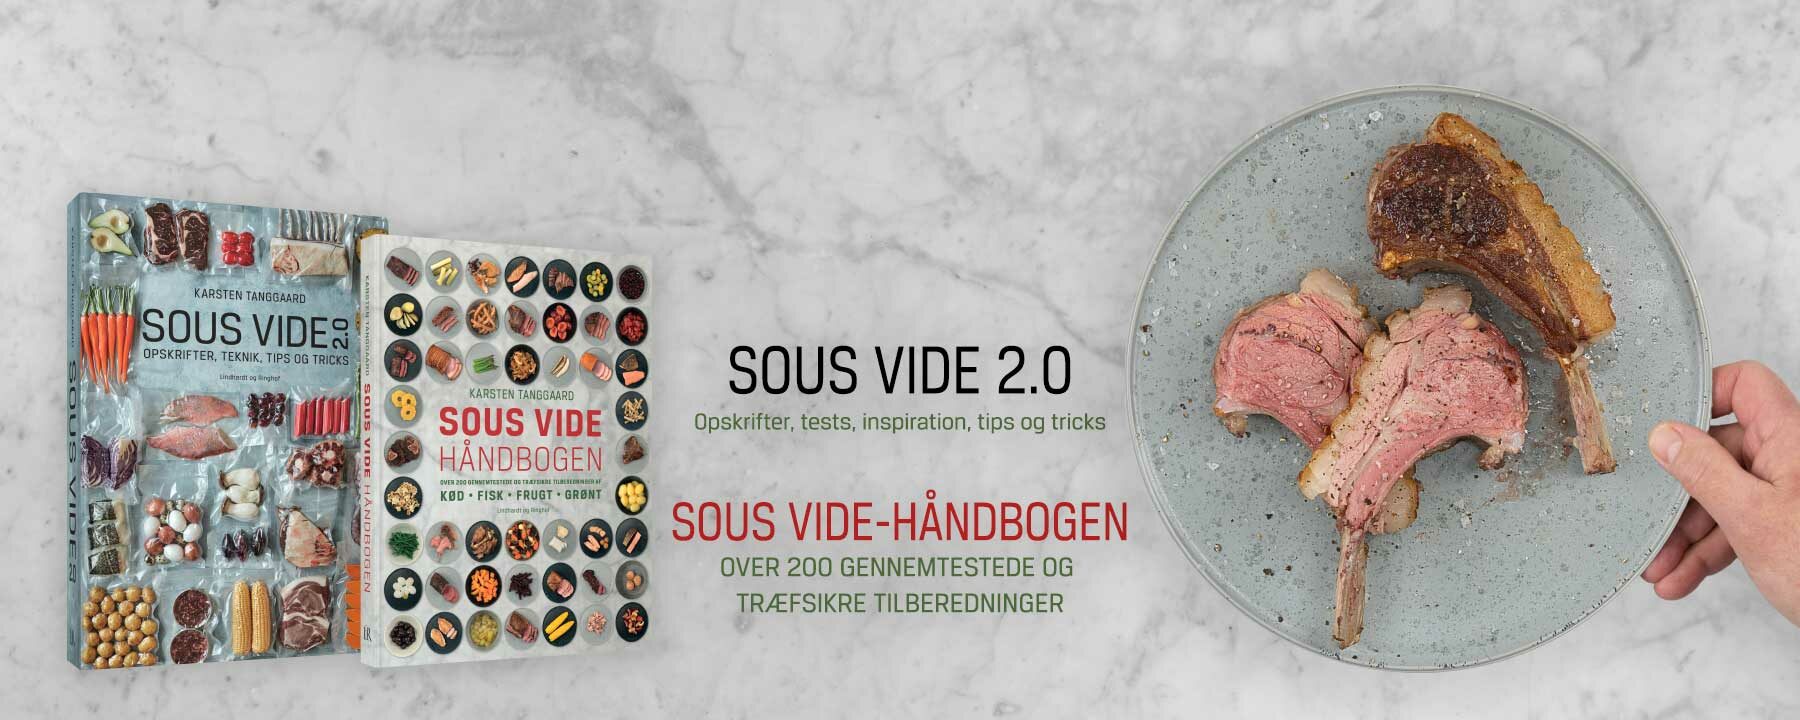 Vice Glorious dominere Sous vide 2.0 – Opskrifter, tests, inspiration, tips og tricks